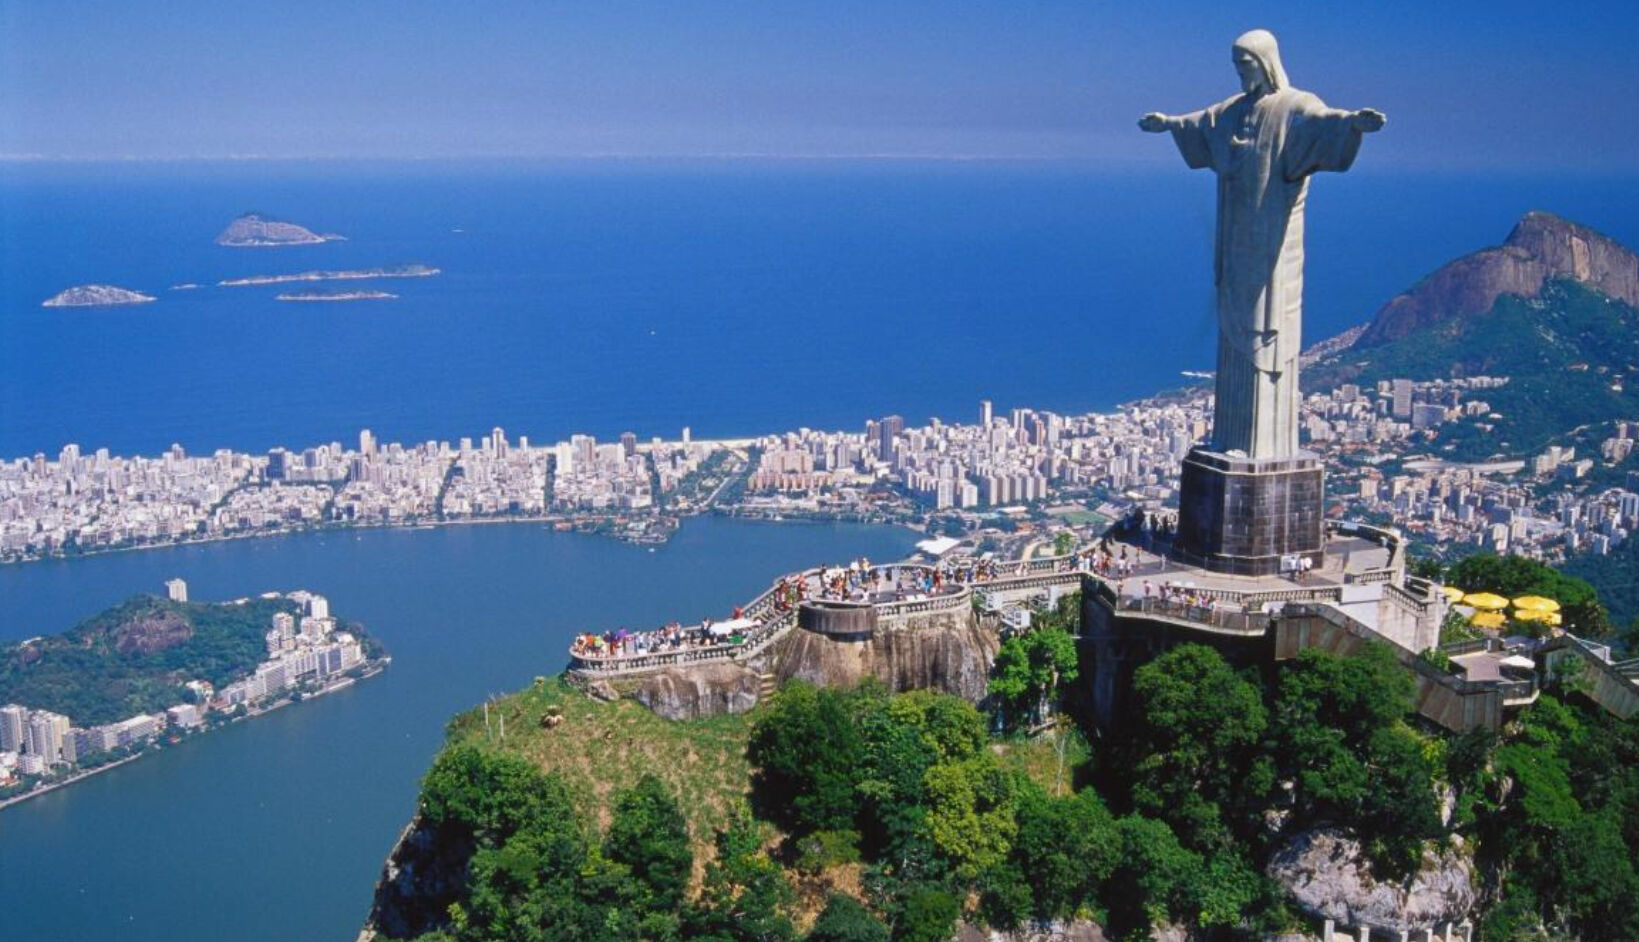 Rio de Janeiro: Carioca Landscapes between the Mountain and the